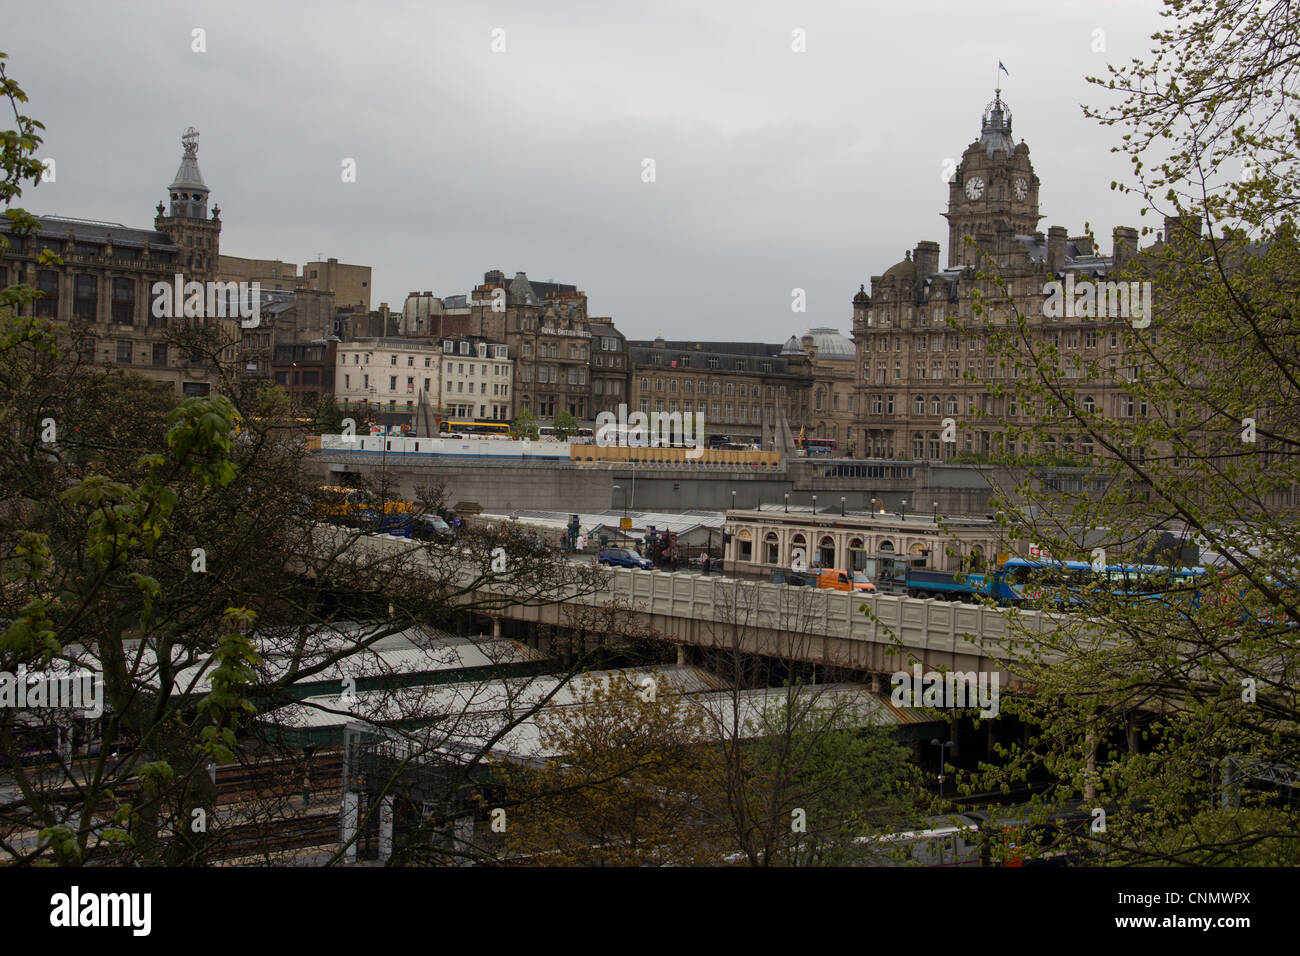 Bahnhof Waverley und Clocktower in Edinburgh. Dies ist das Balmoral Hotel mit Sightseeing-Bussen daneben. Stockfoto